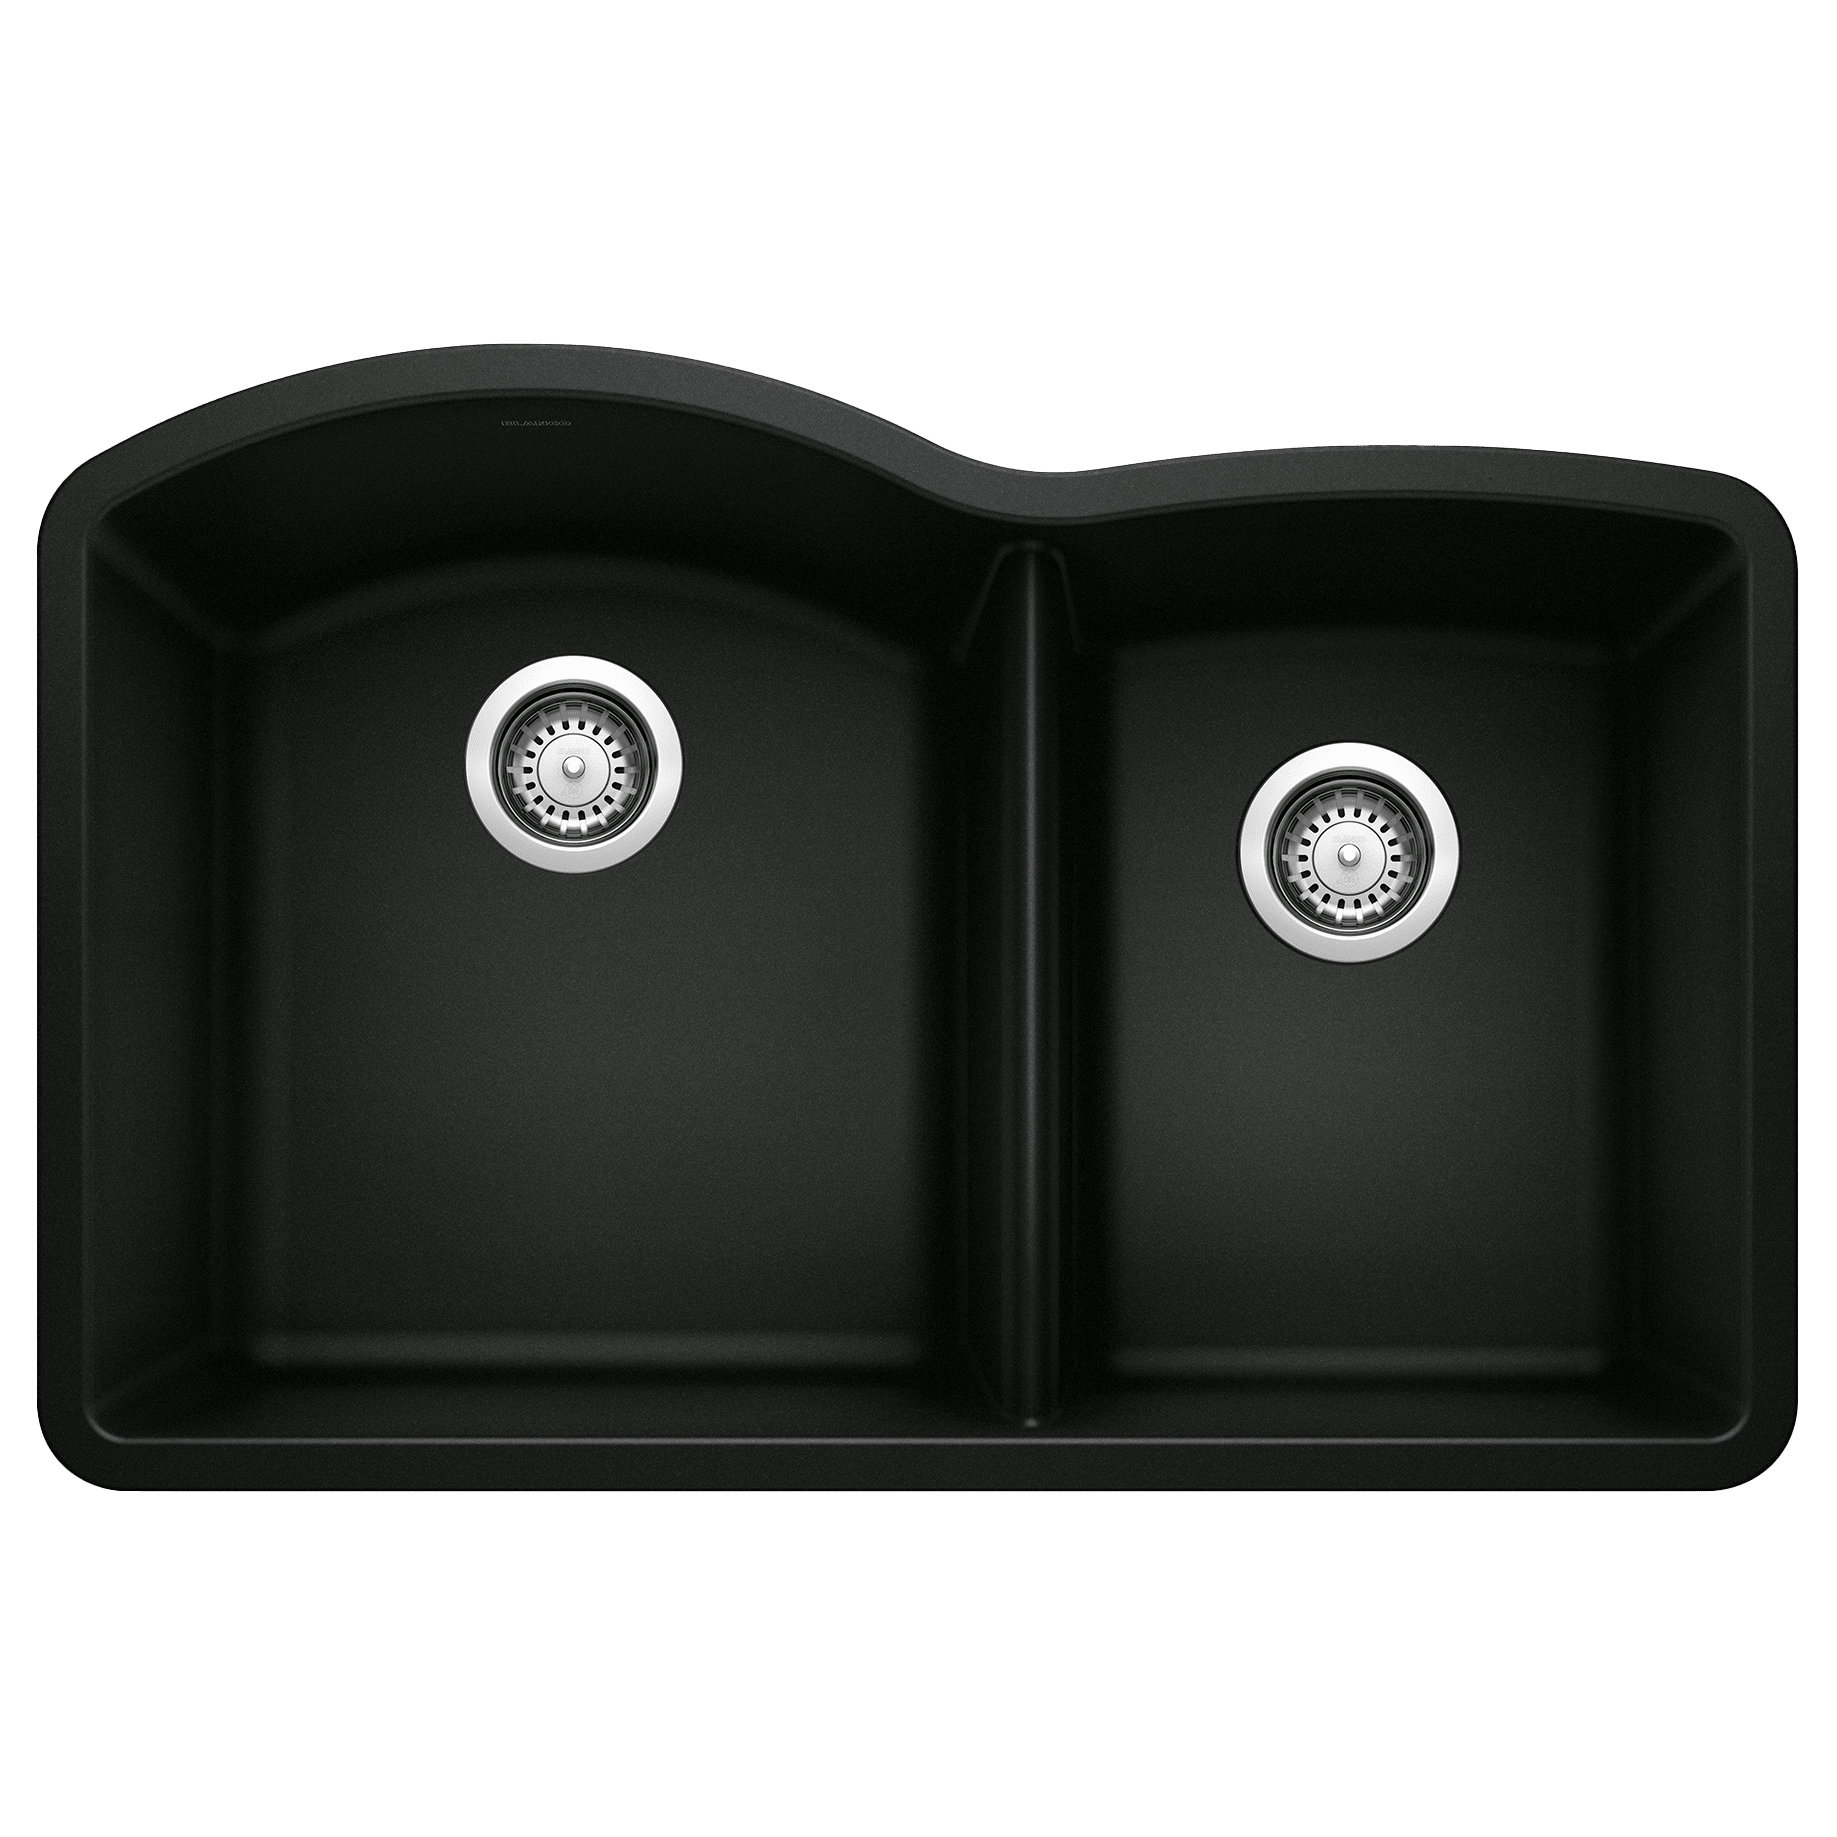 Diamond 32x20-27/32x9-1/2" 1-3/4 Dbl Bowl Sink in Black